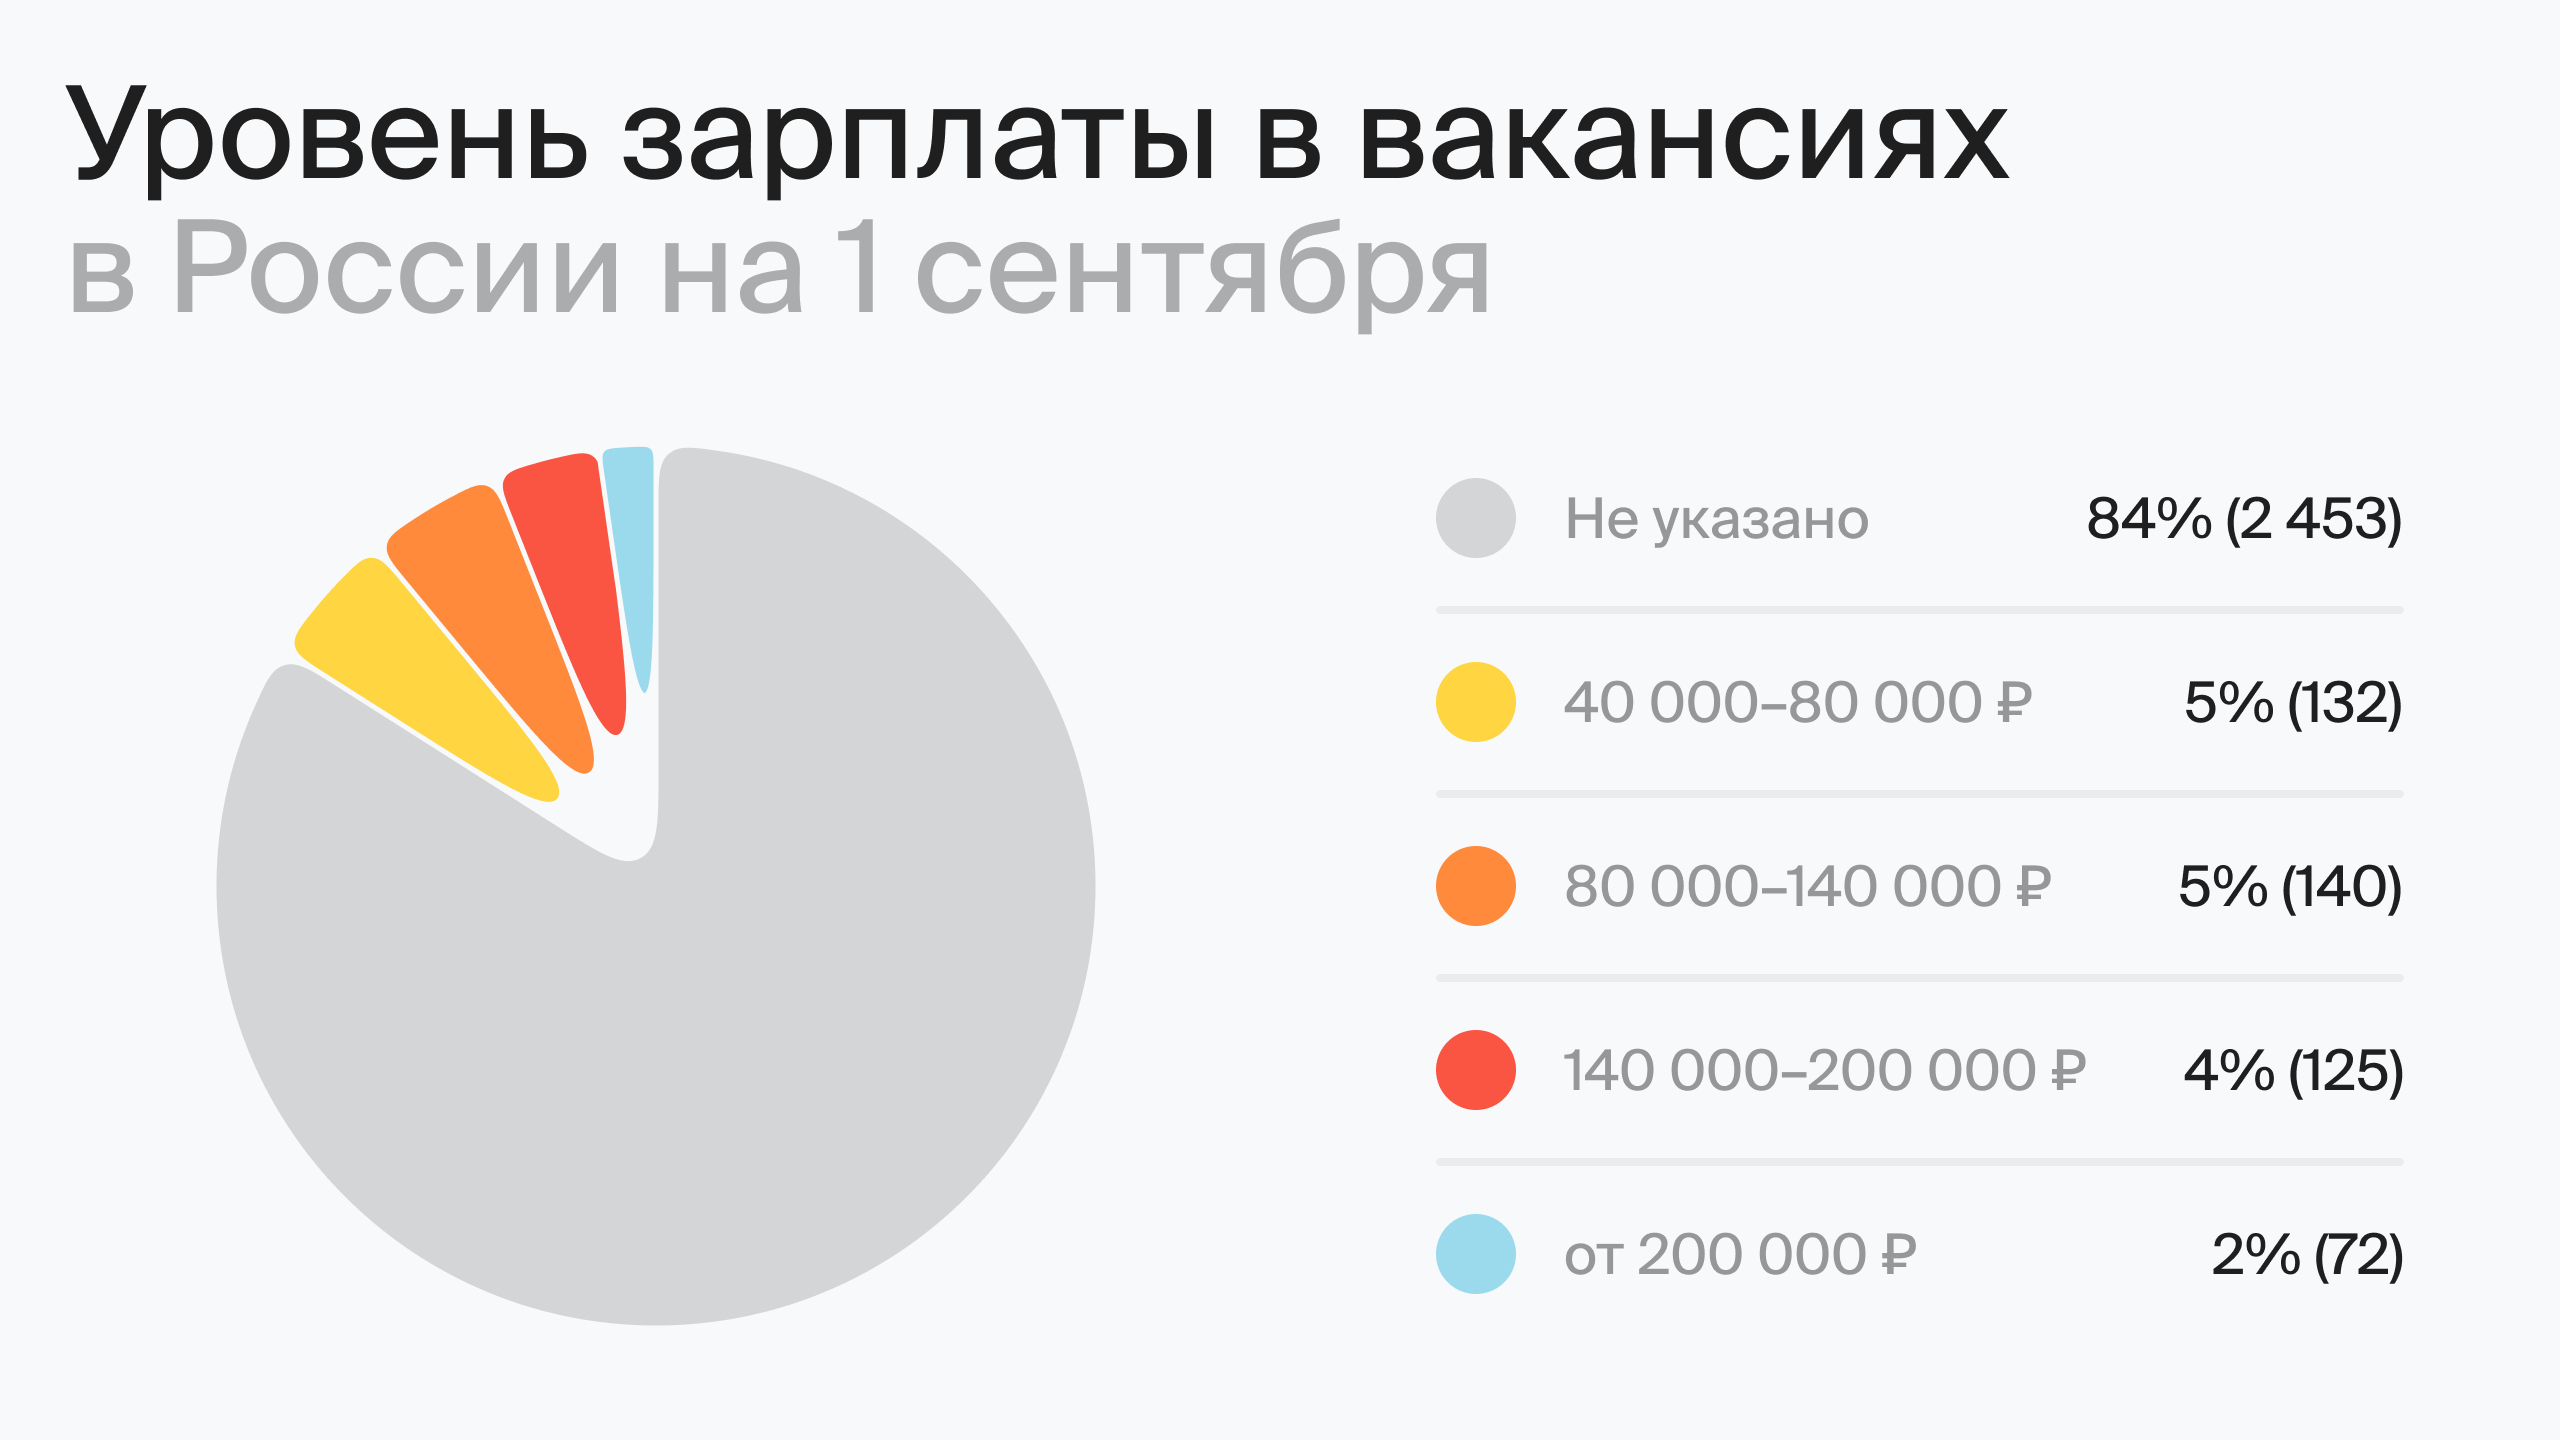 Уровень зарплаты в вакансиях в России на 1 сентября (по данным hh.ru)